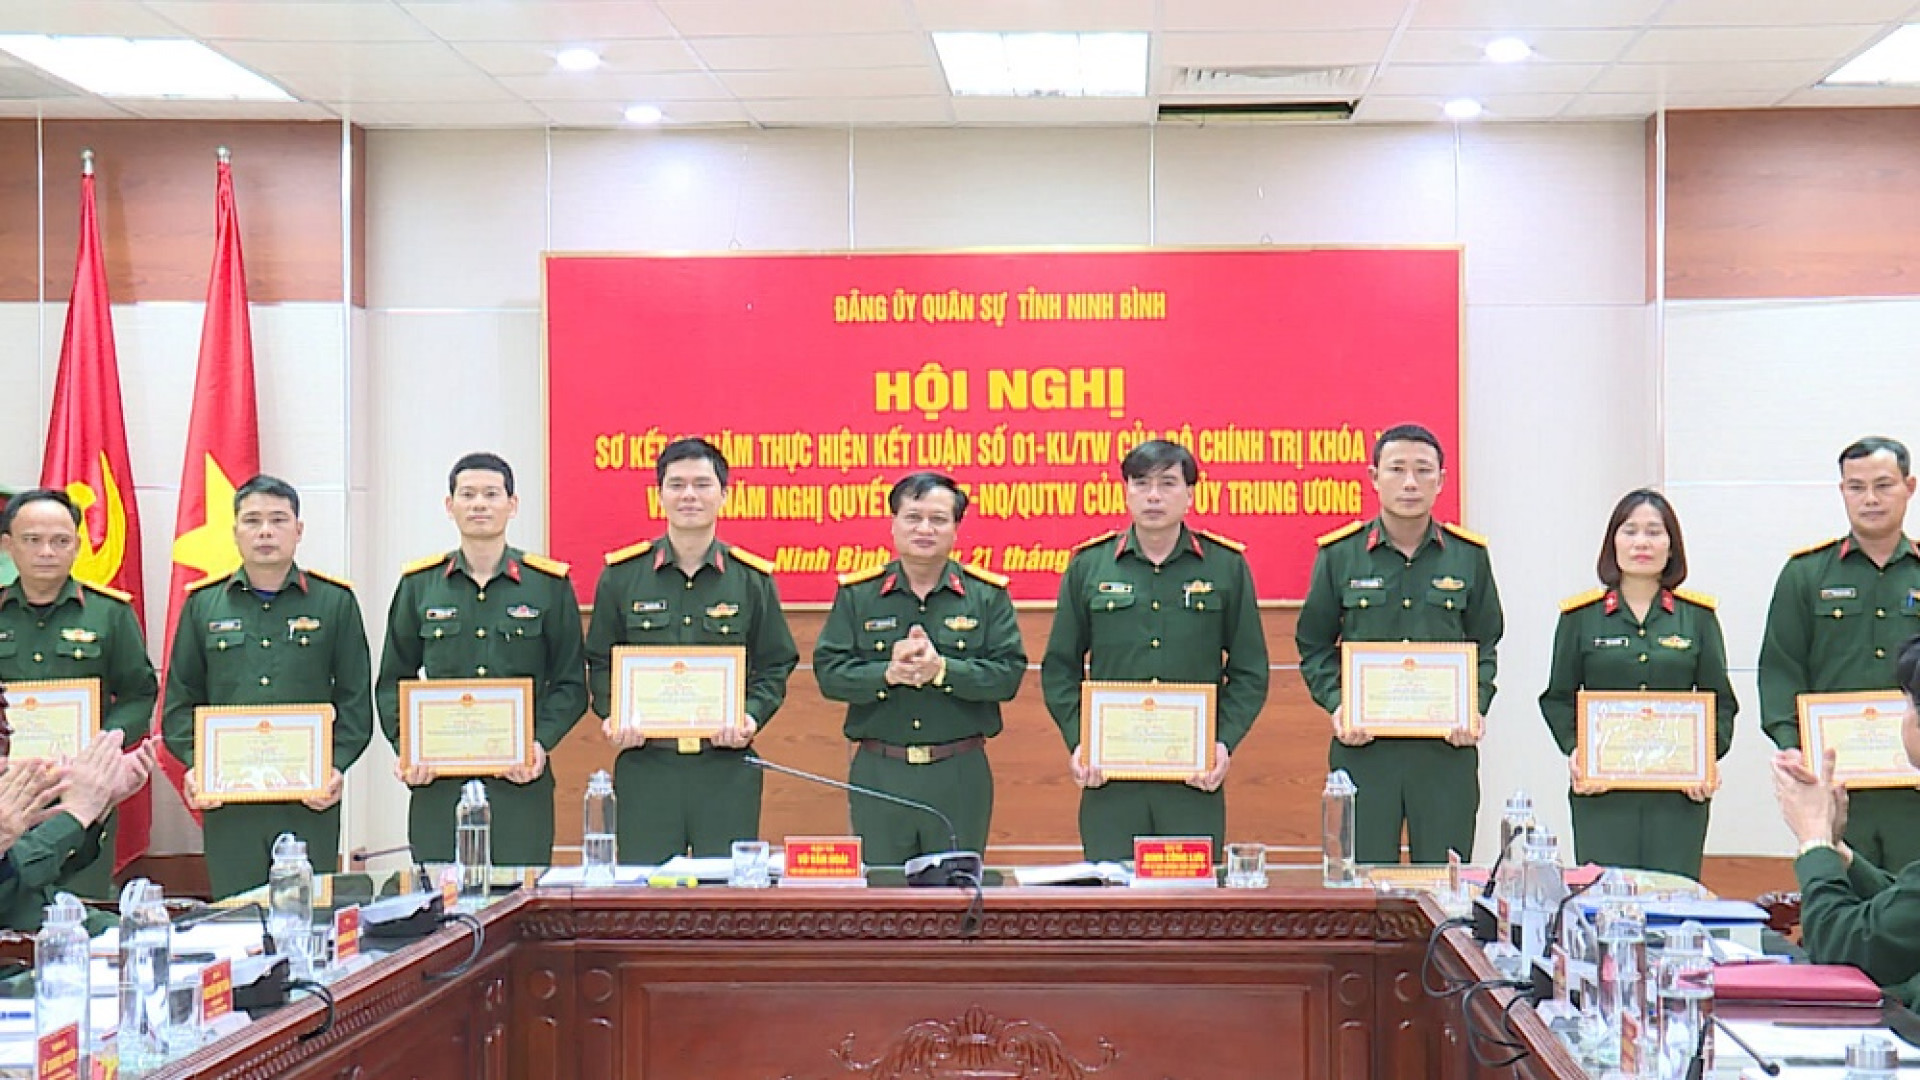 Đảng ủy Quân sự tỉnh Ninh Bình sơ kết 3 năm thực hiện Kết luận số 01 của Bộ Chính trị, 2 năm thực hiện Nghị quyết số 847 của Quân ủy Trung ương